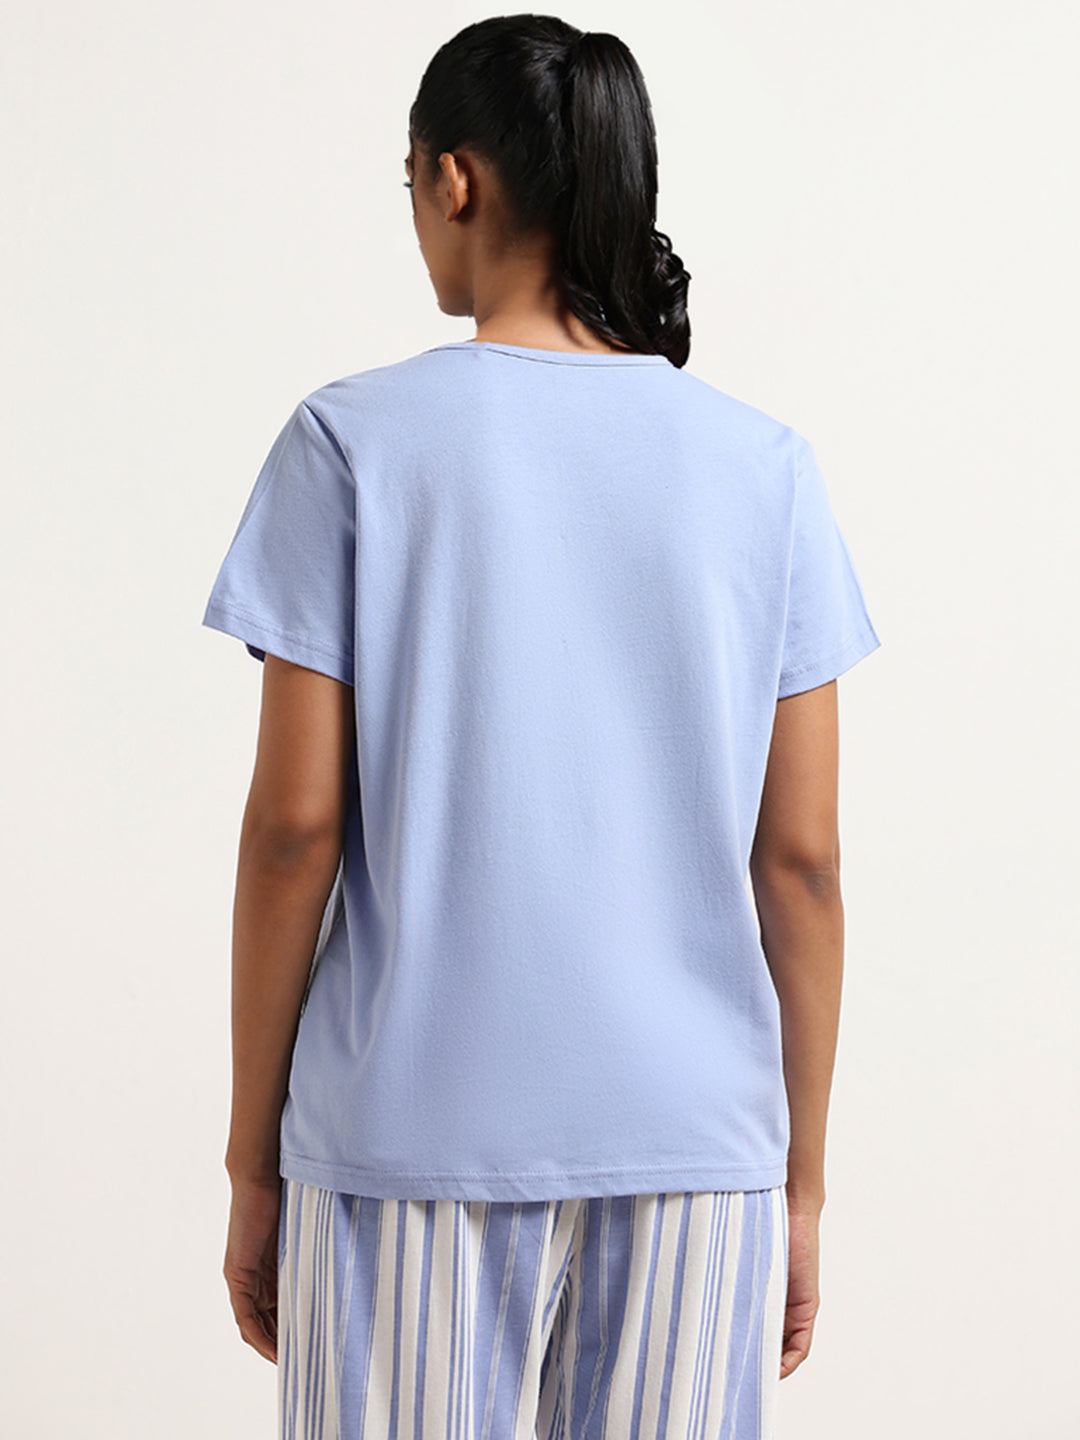 Wunderlove Blue Contrast Print Cotton T-Shirt